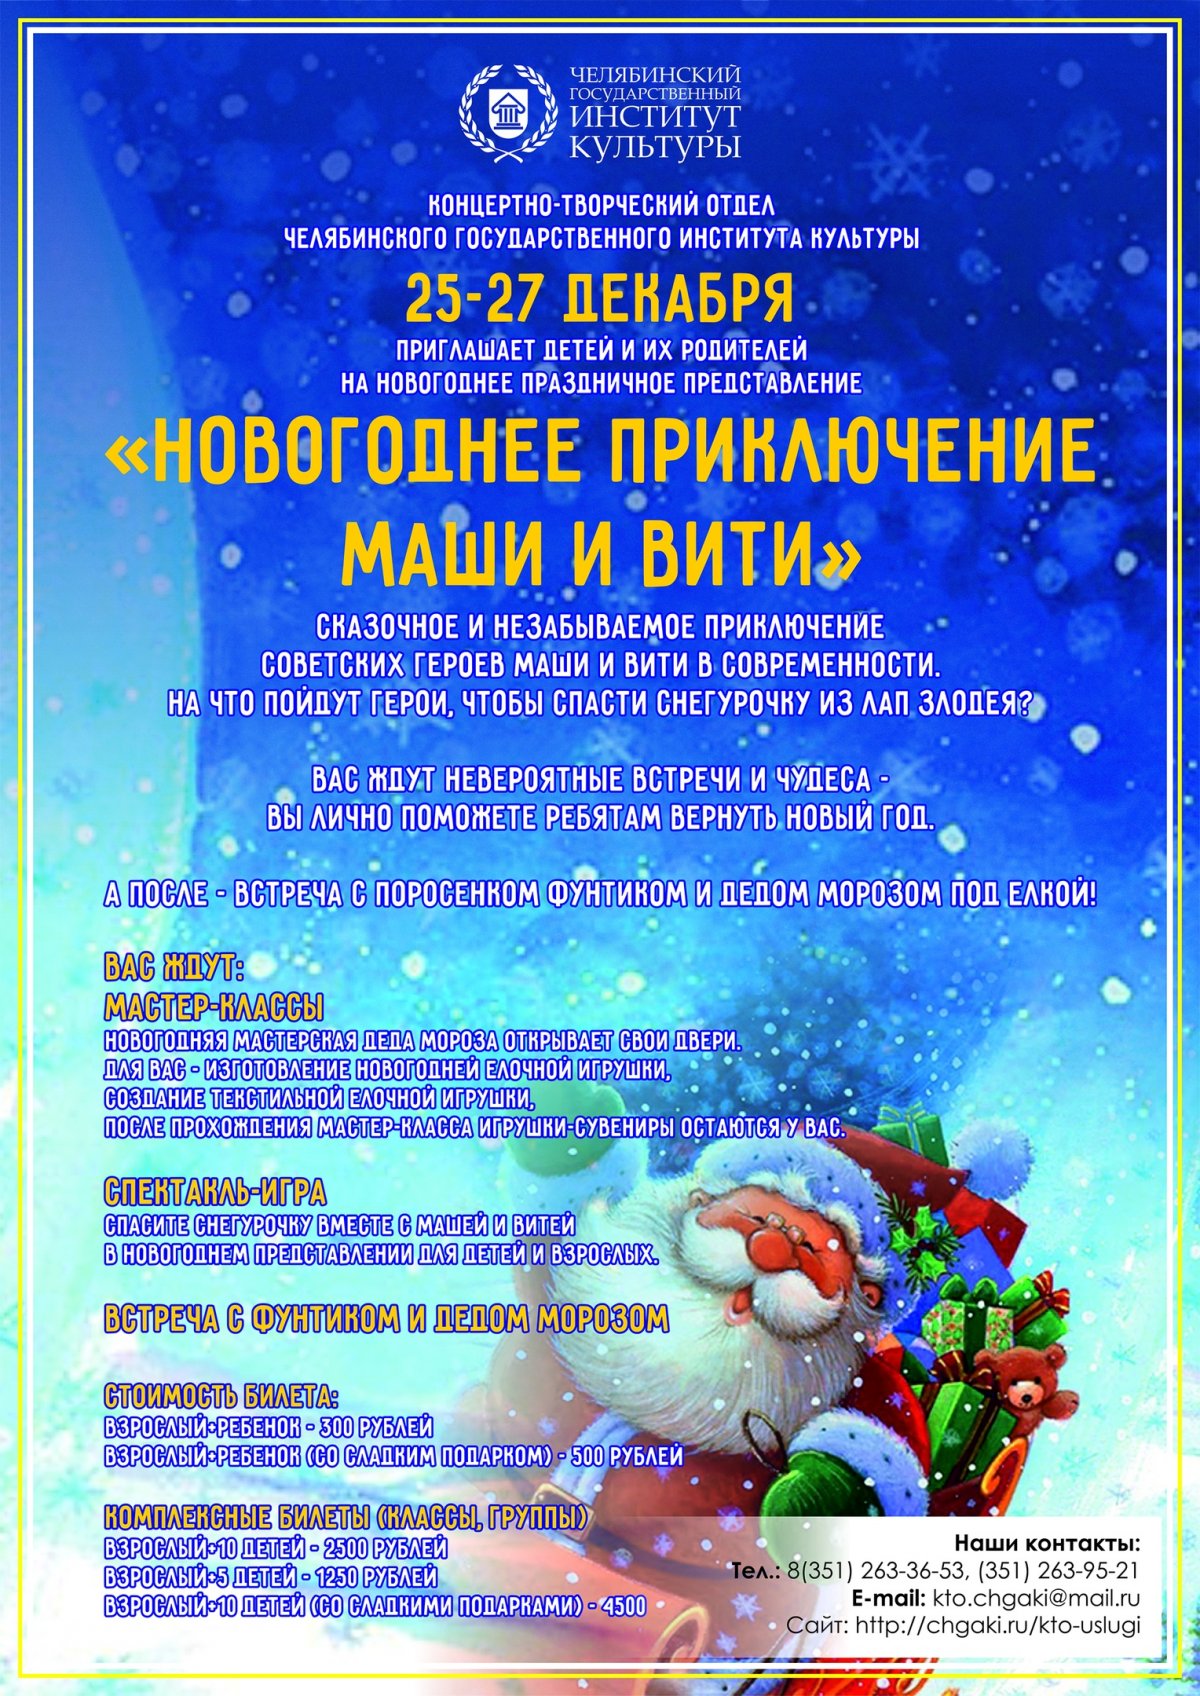 Напоминаем, что с 25 по 27 декабря, в 16:00 новогоднее волшебство придет в ЧГИК. Сказочное и незабываемое приключение советских героев Маши и Вити в современности.